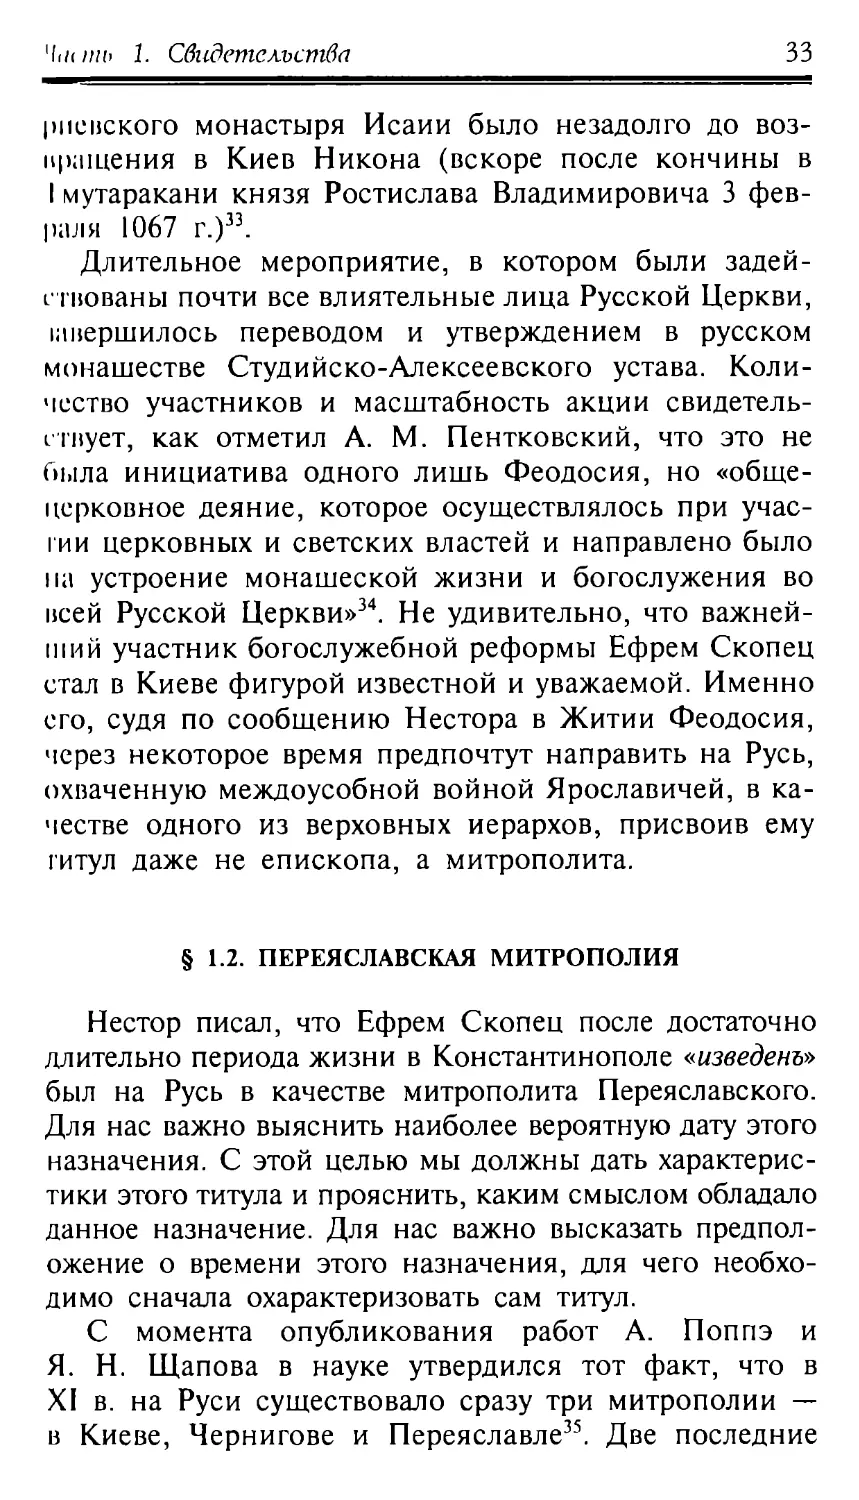 § 1.2. Переяславская митрополия